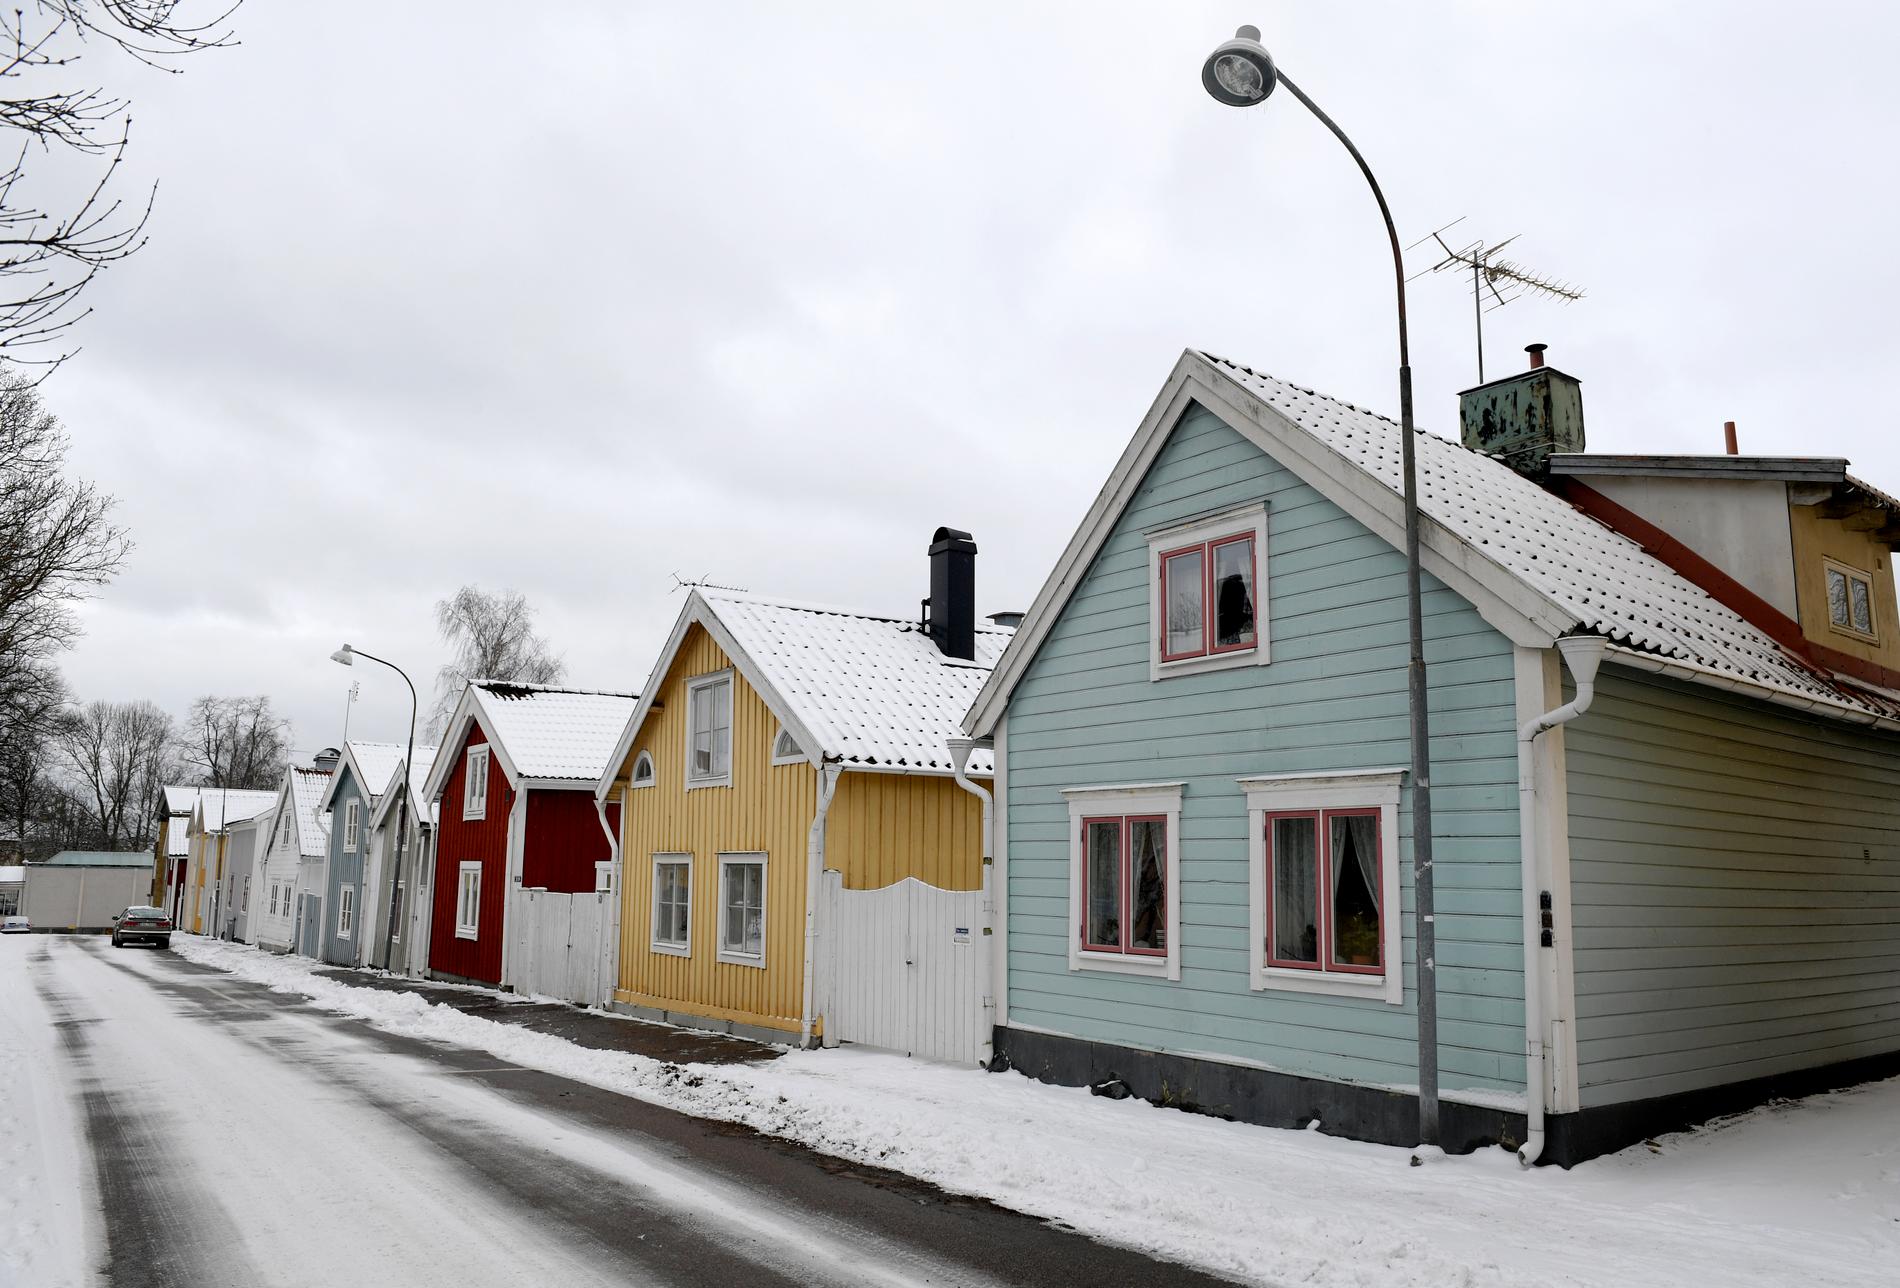 Villaägare i södra Sverige kommer få merparten av det elstöd som hushållen utlovats av regeringen i februari. När företagens elstöd kommer är oklart. Arkivbild